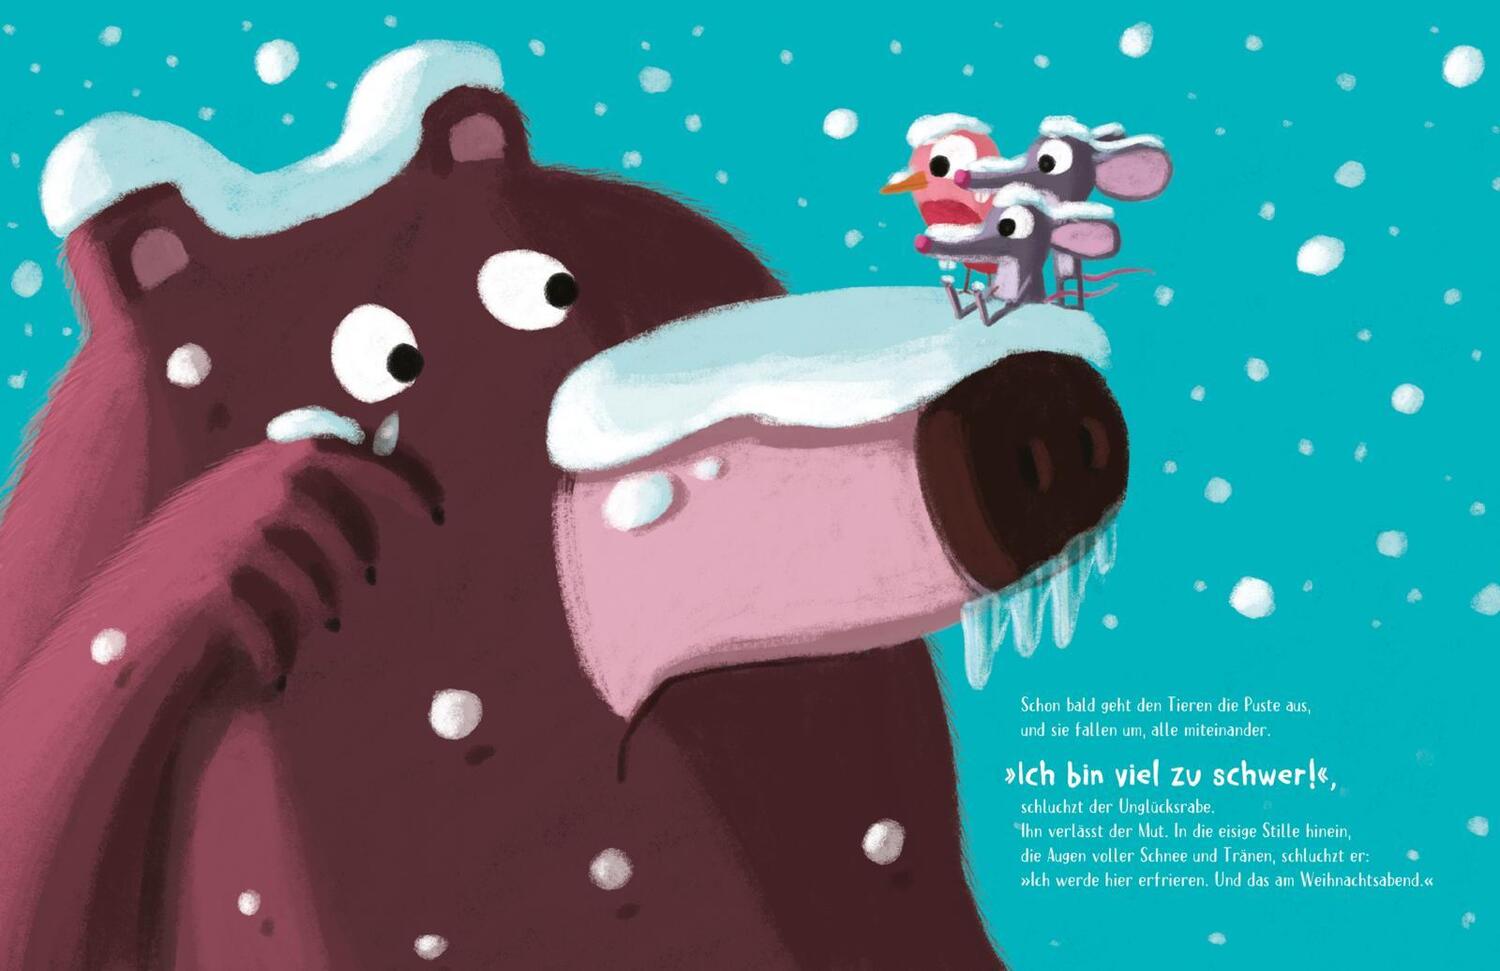 Bild: 9783522460026 | Süßer die Bären nie brummen | Catherine Metzmeyer | Buch | 32 S.